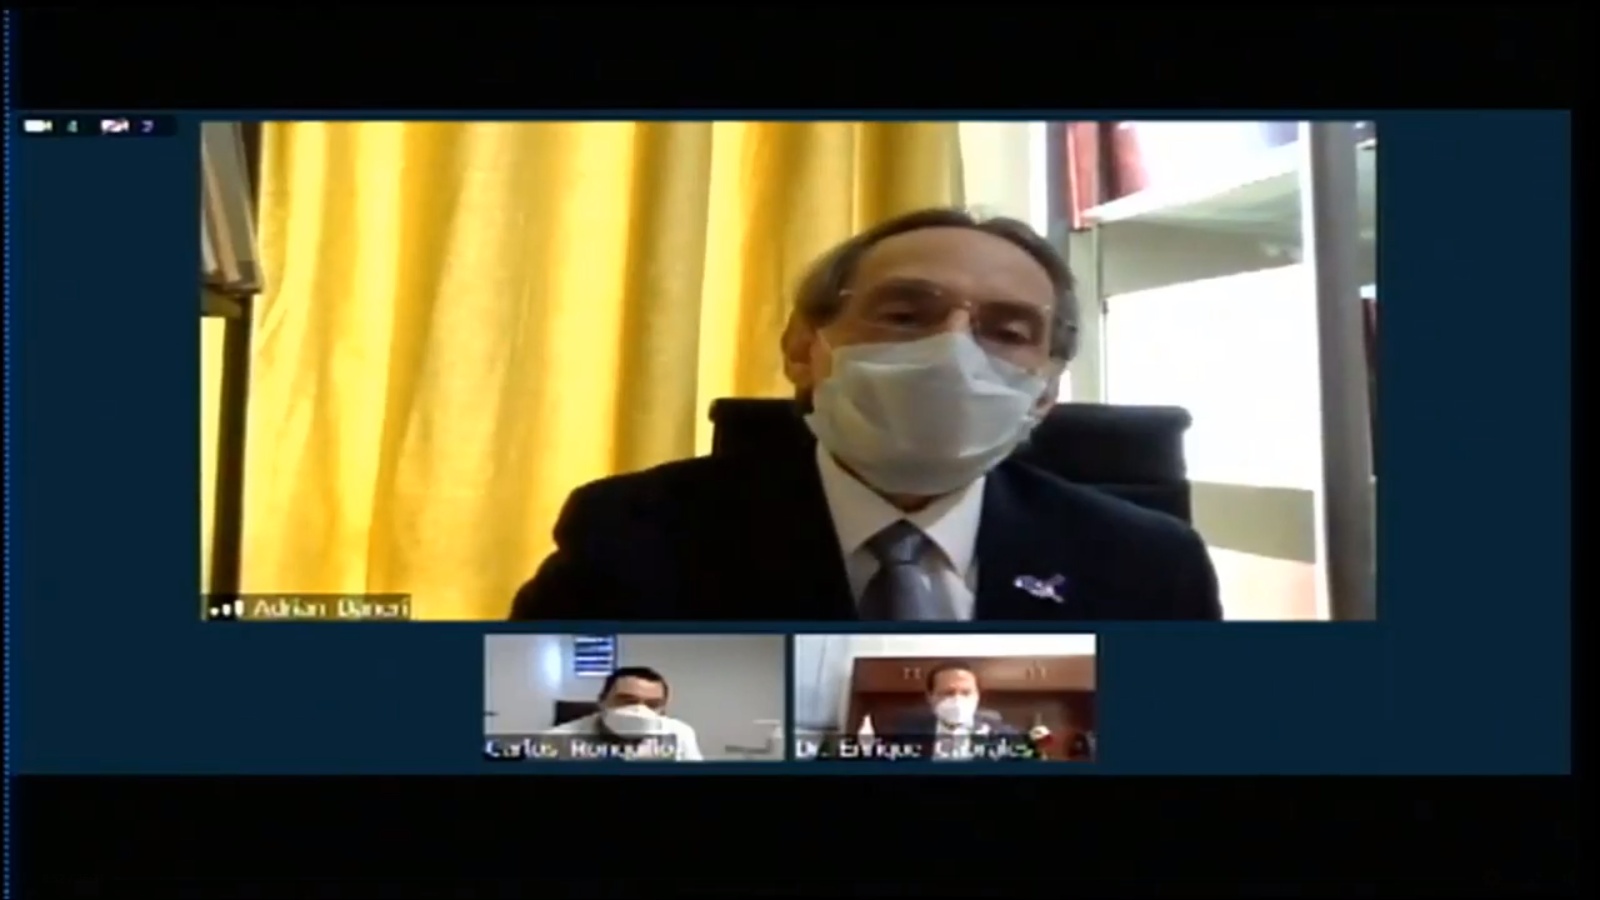 Captura de pantalla del Dr. Adrián Daneri, investigador del CUCS haciendo uso de la palabra